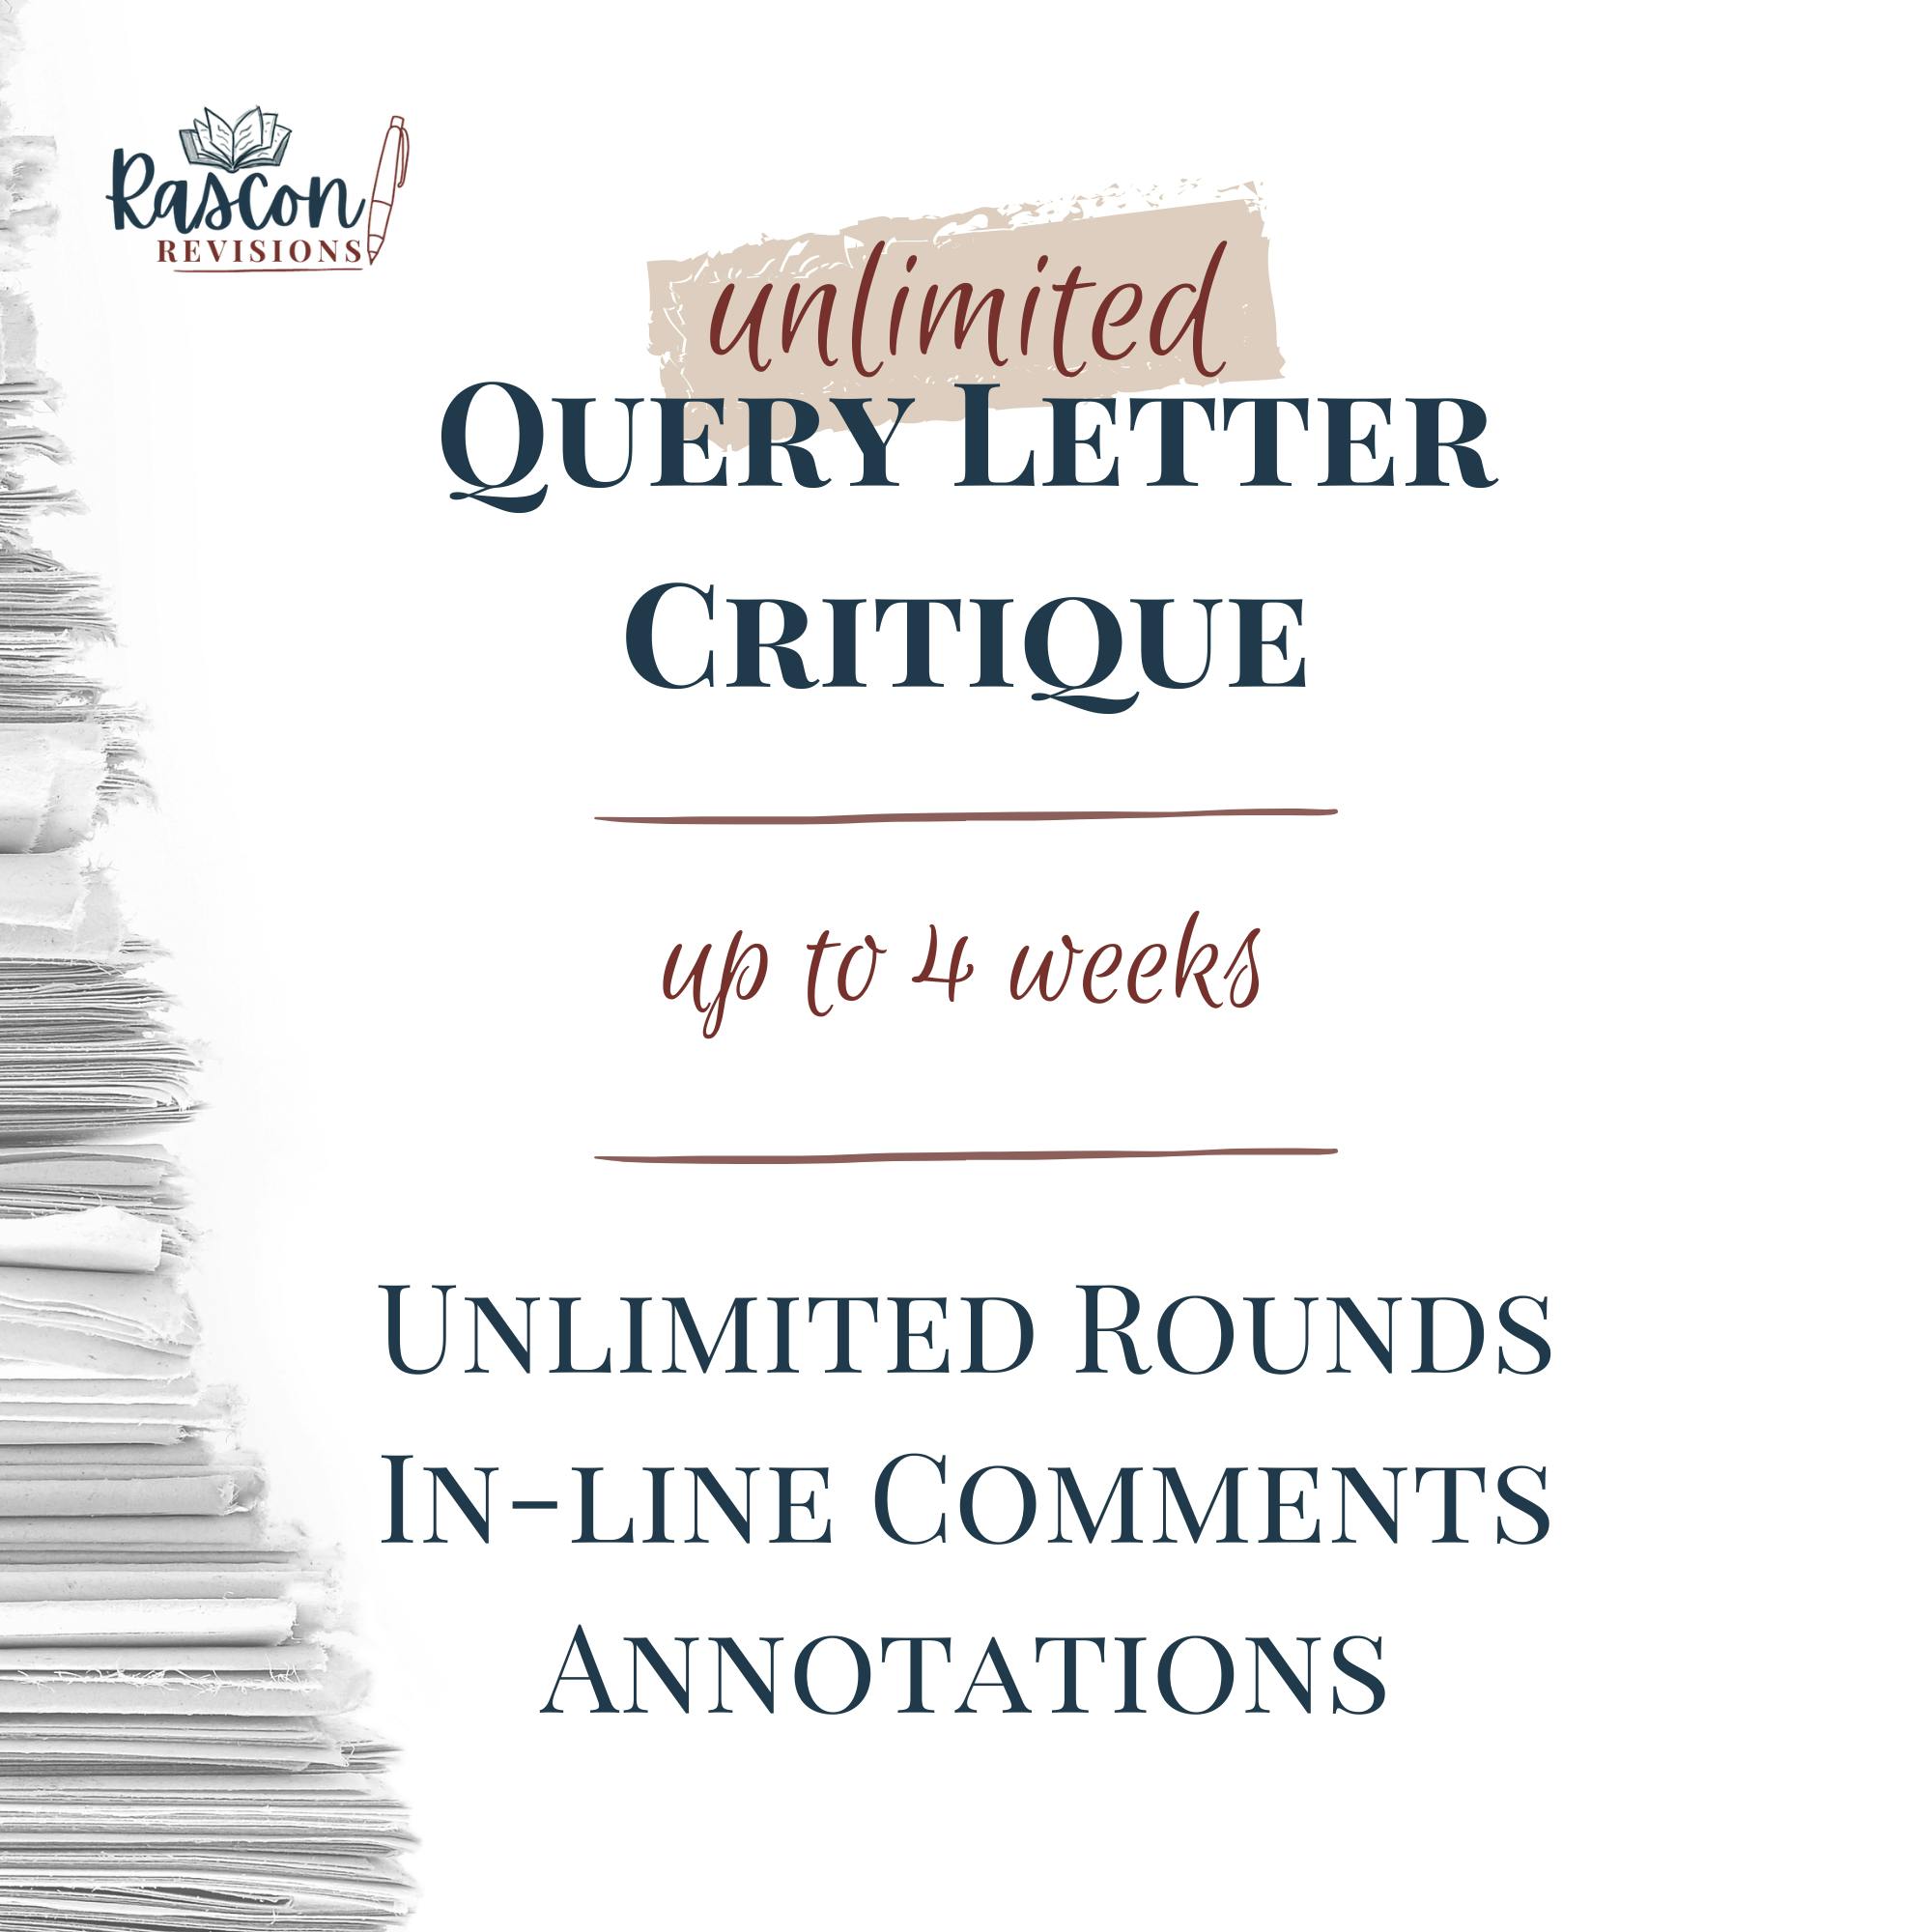 Unlimited Query Letter Critique